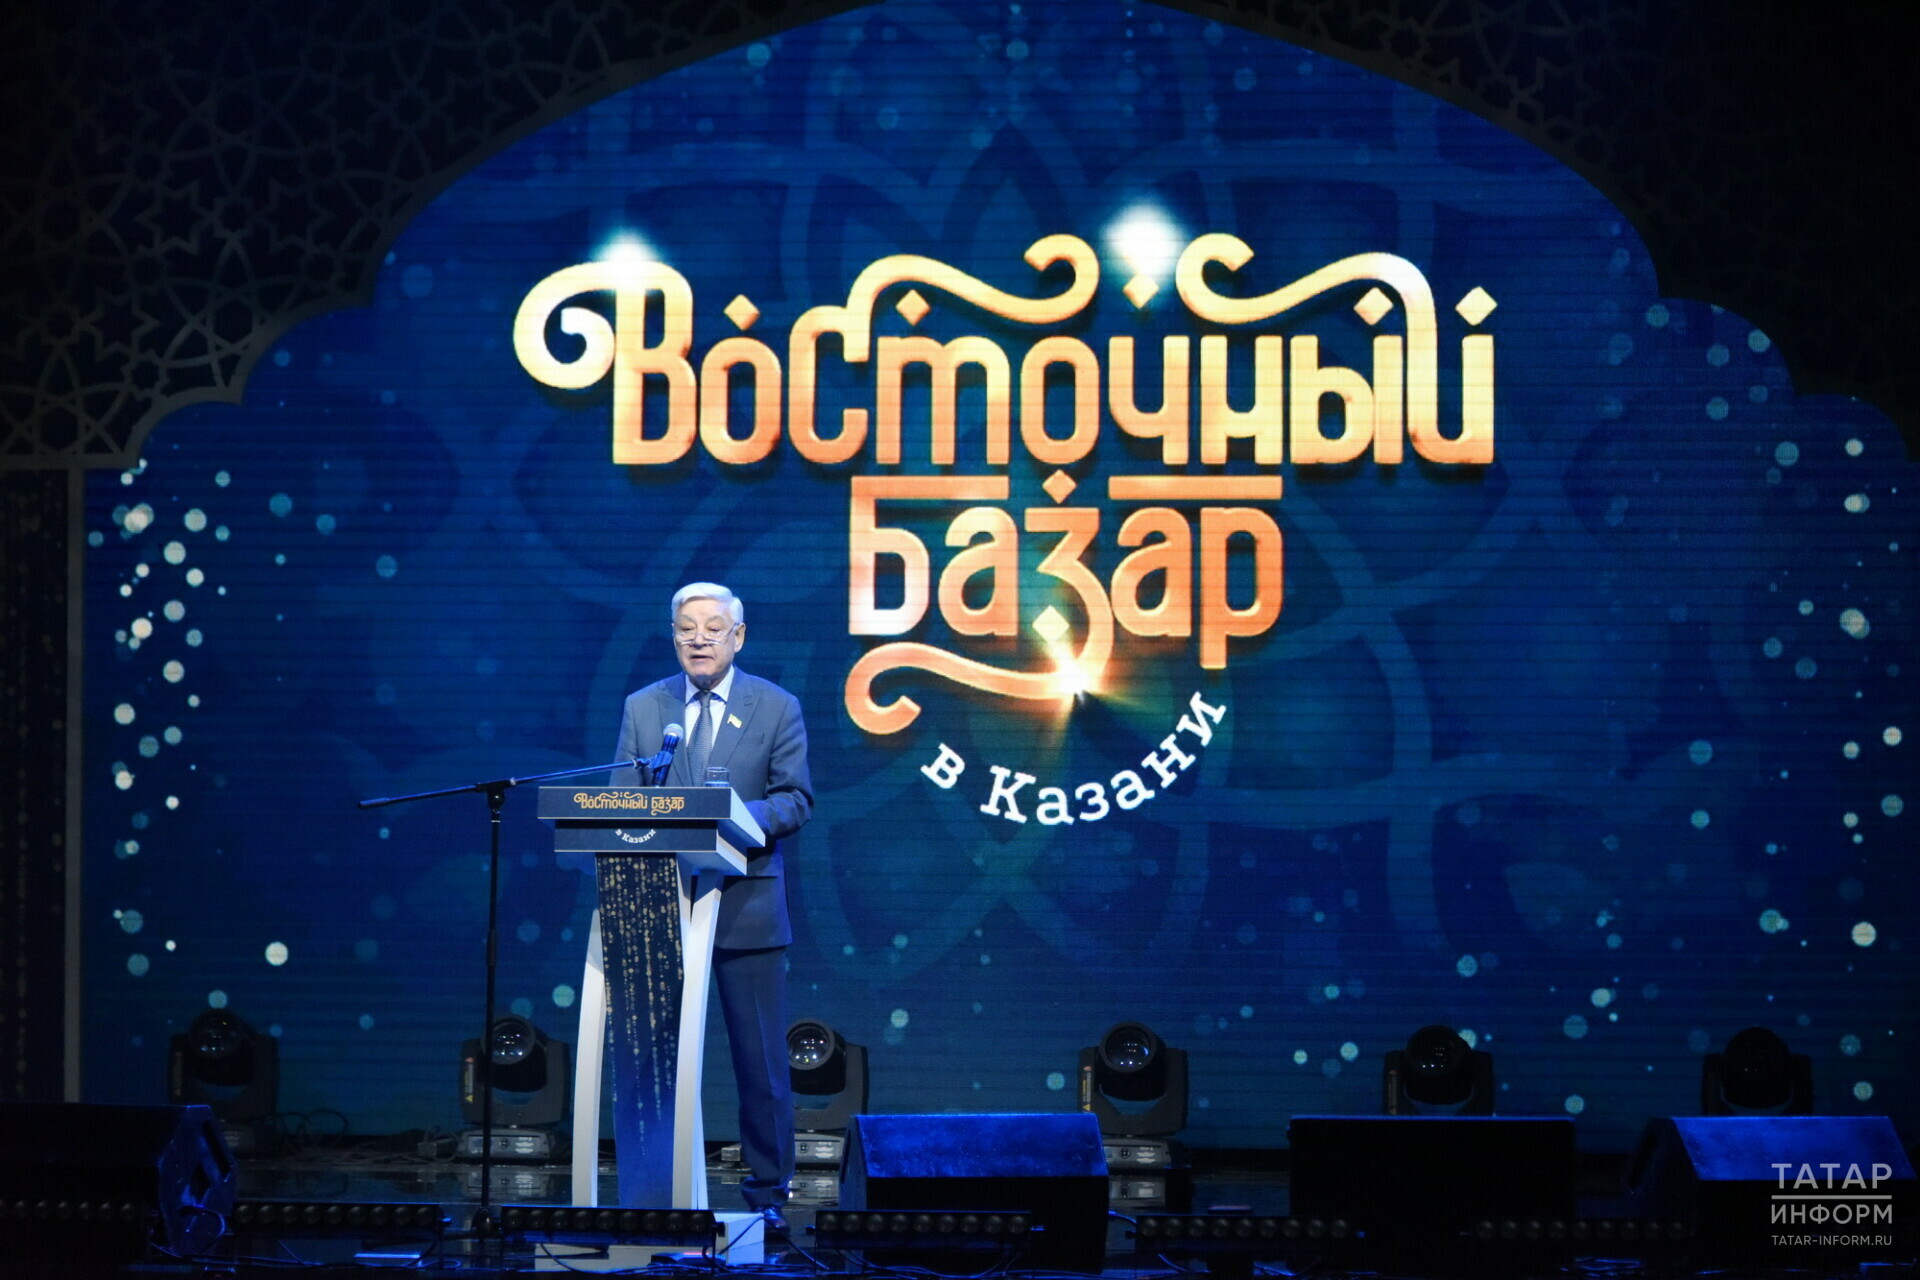 Мухаметшин: Фестиваль «Восточный базар в Казани» станет культурным мостом между народами